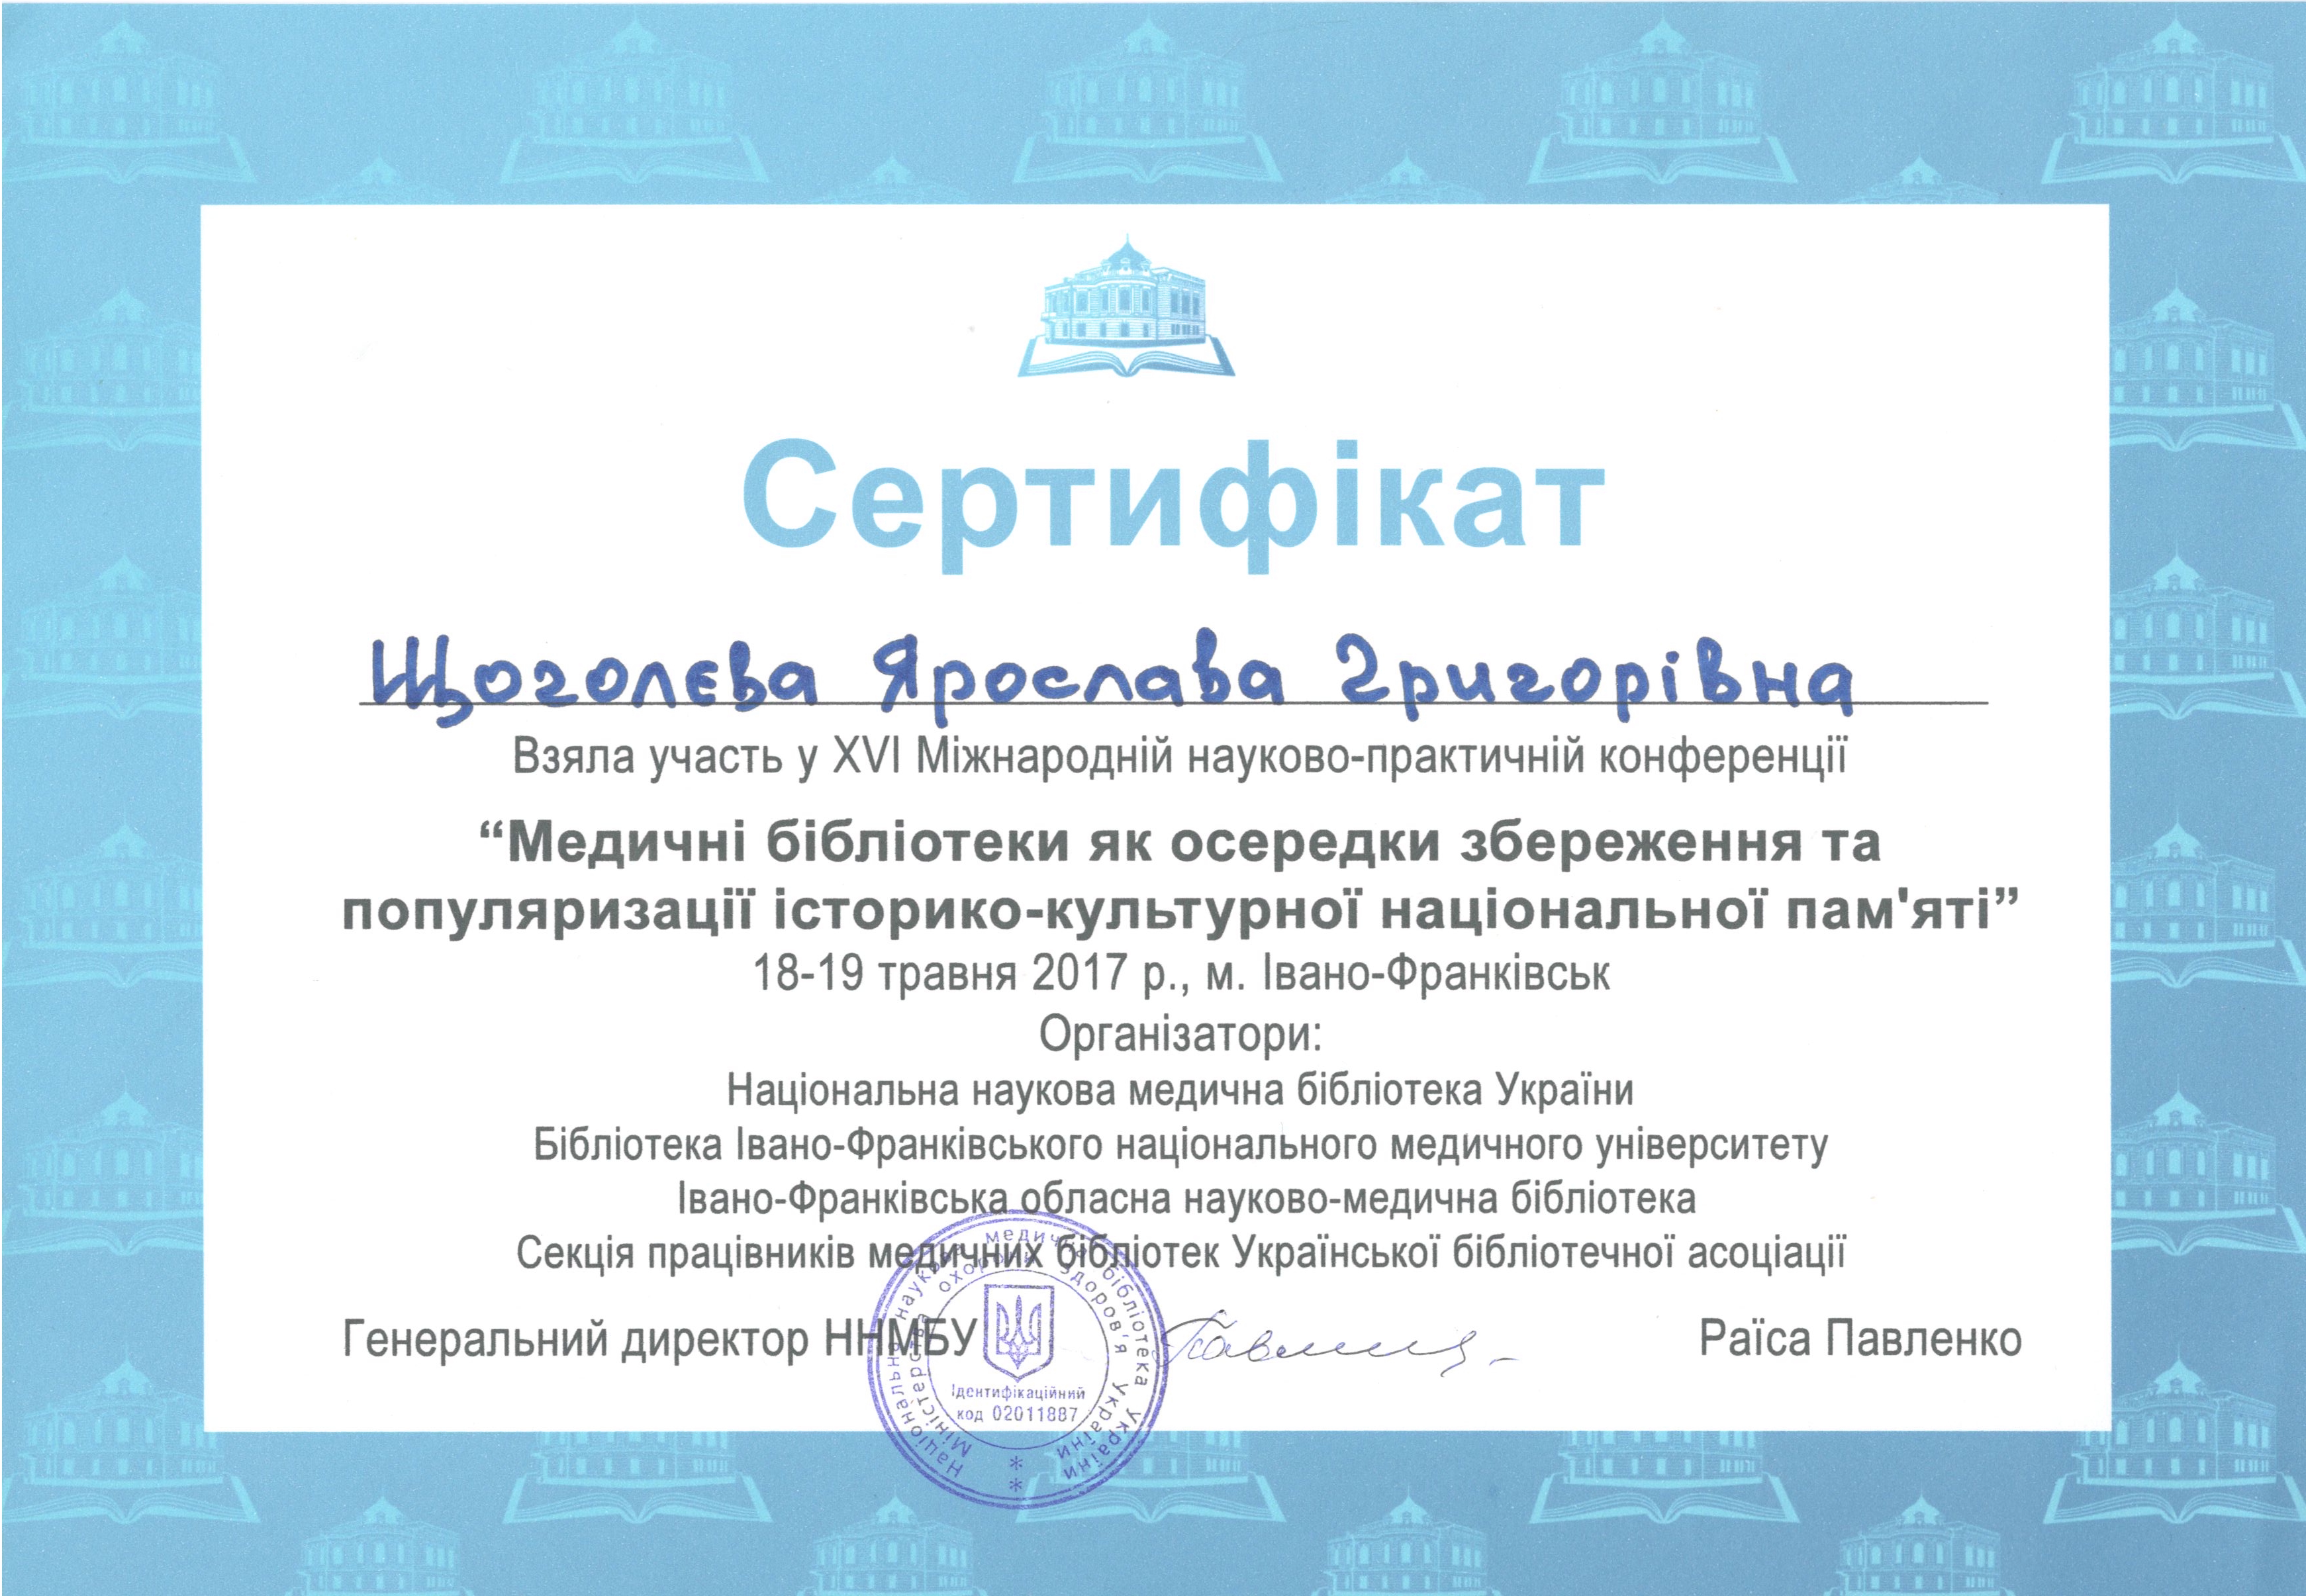 Сертифікат учасника XVI міжнародної науково-практичної конференції “Медичні бібліотеки як осередки збереження та популяризації історико-культурної національної пам’яті”